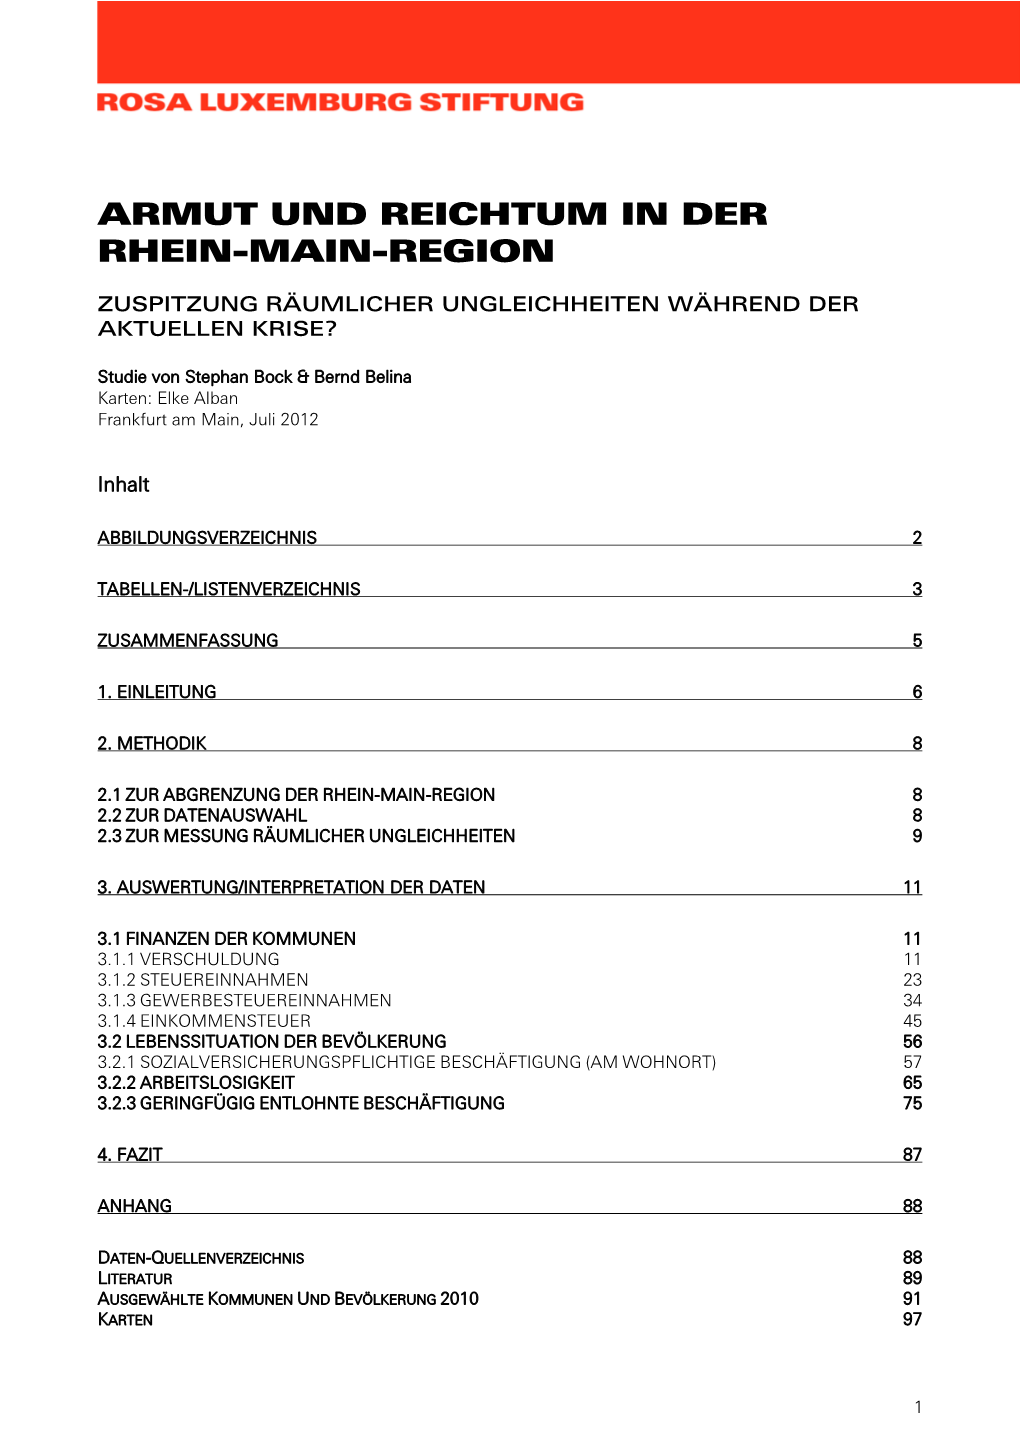 Armut Und Reichtum in Der Rhein-Main-Region